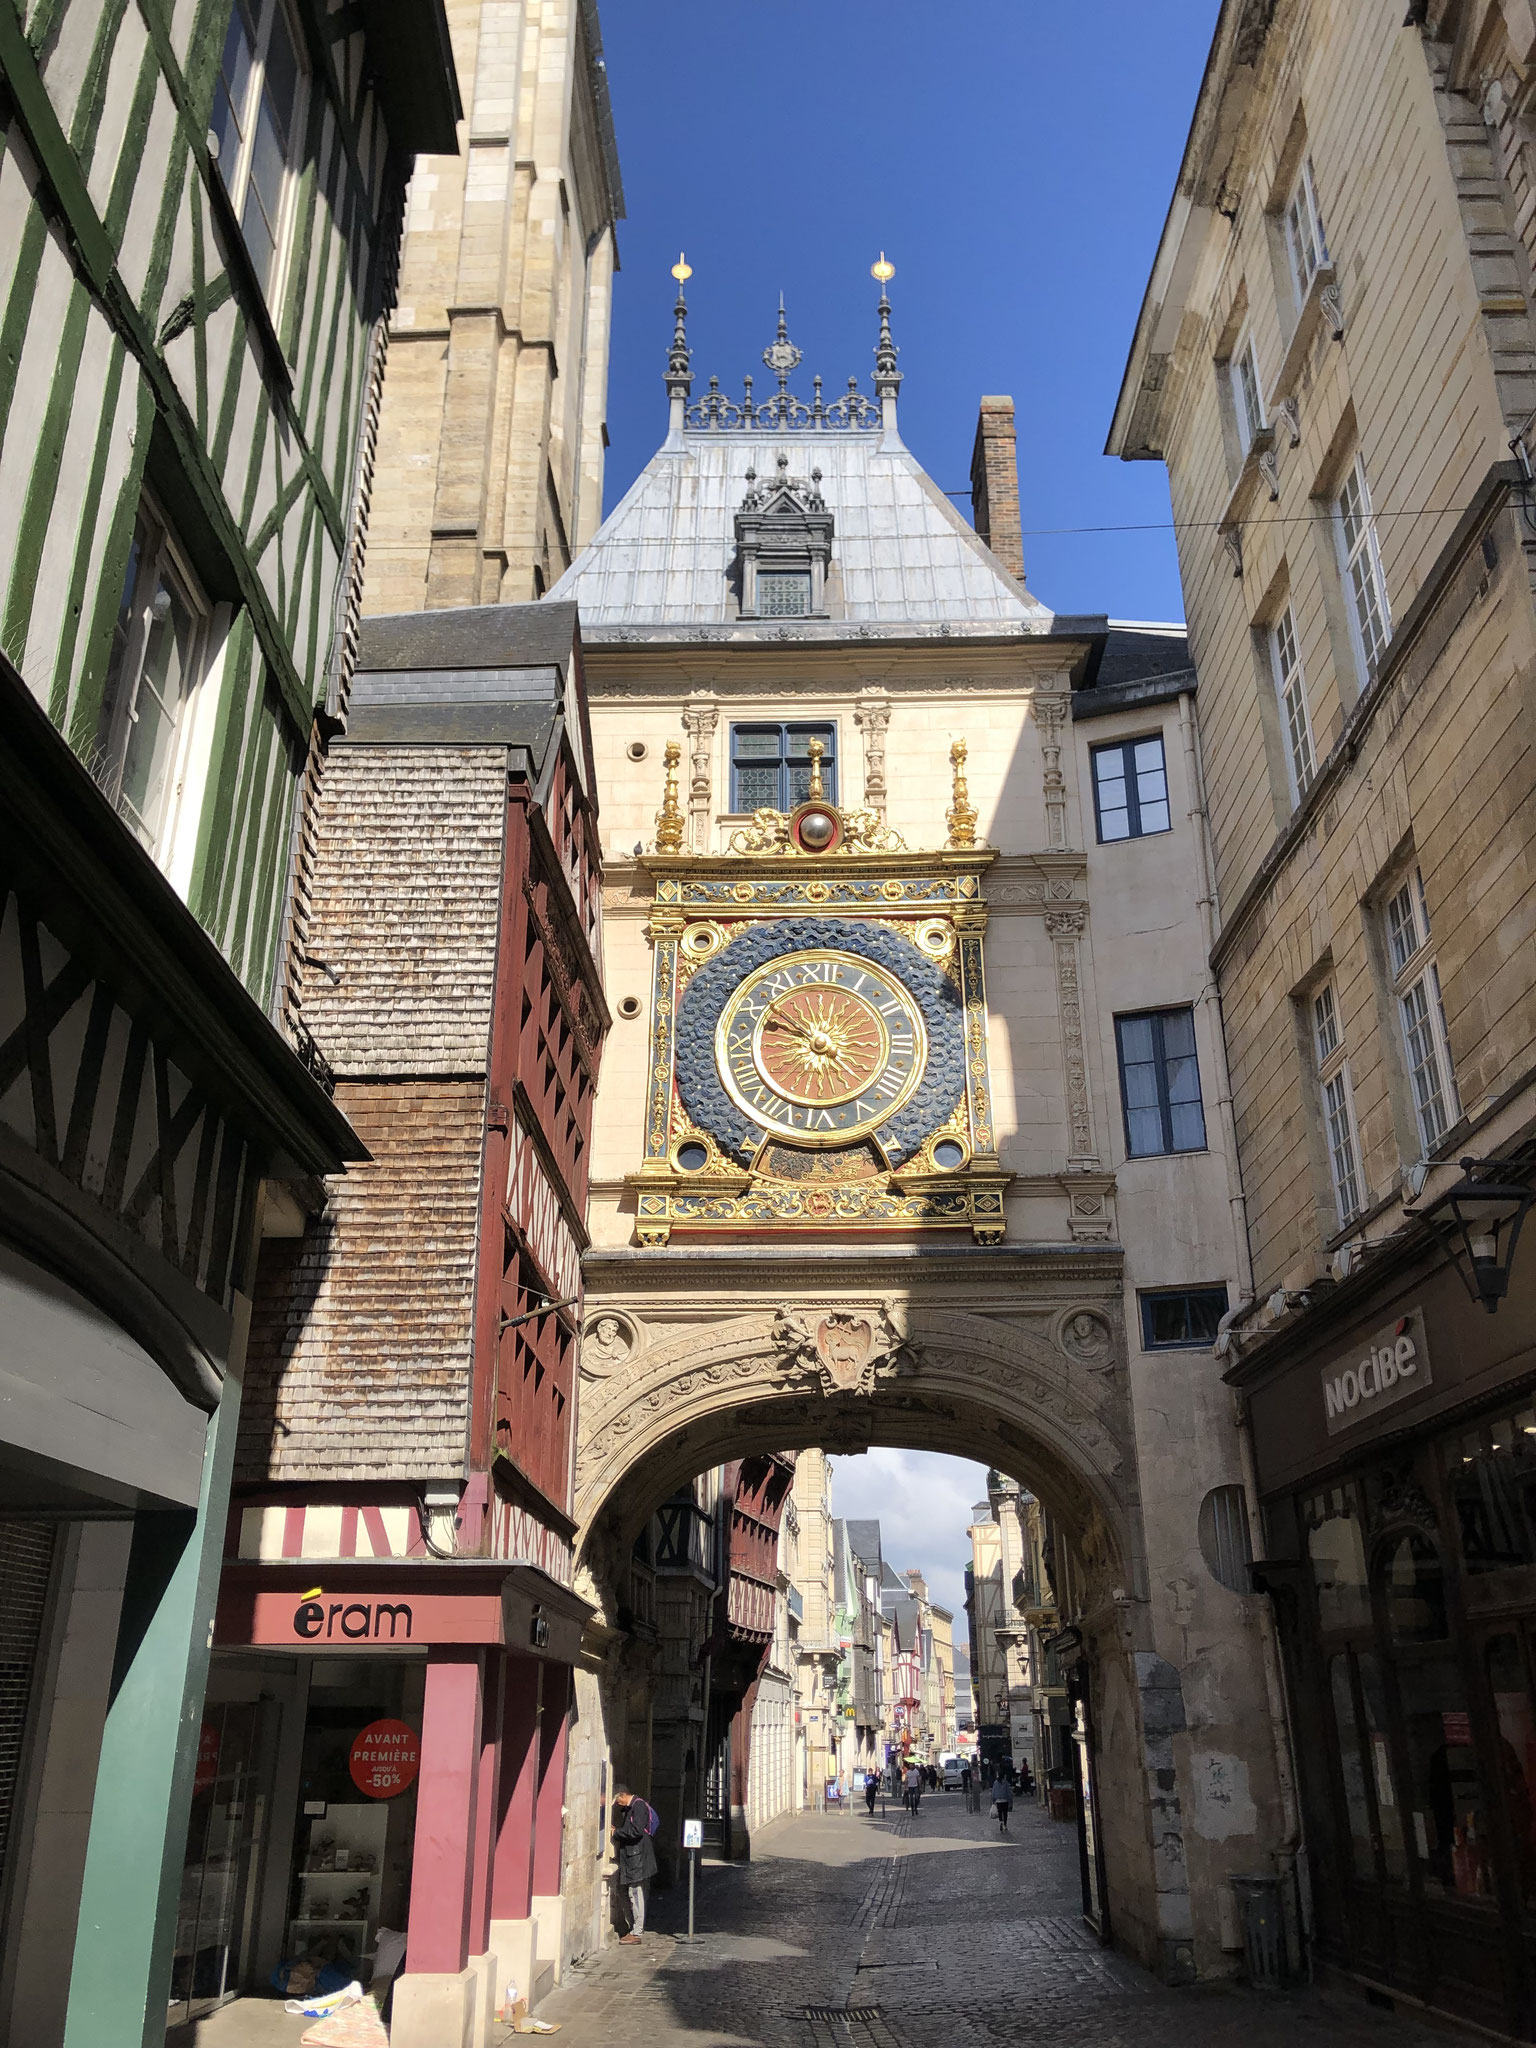 Grande Horloge in Rouen